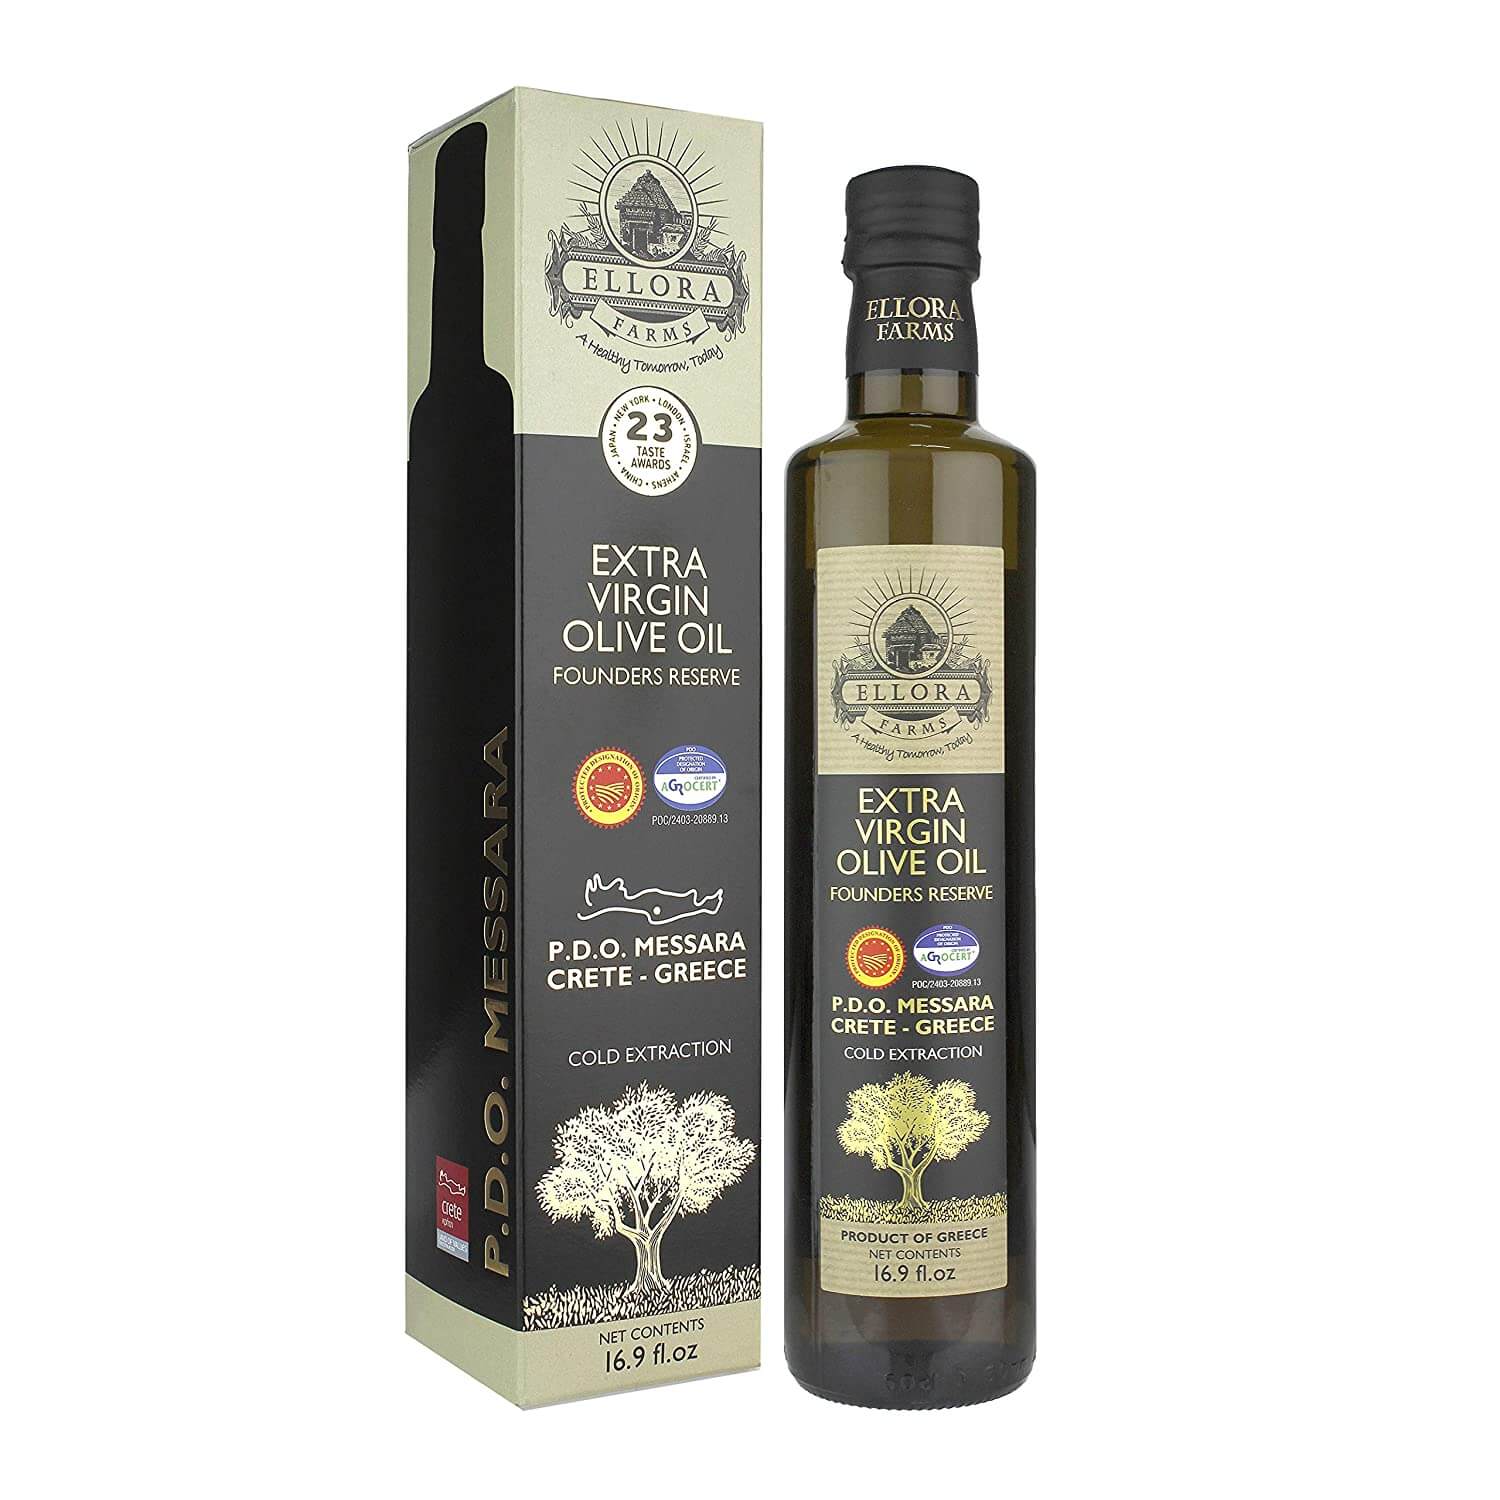 Ellora Farms Olive Oil